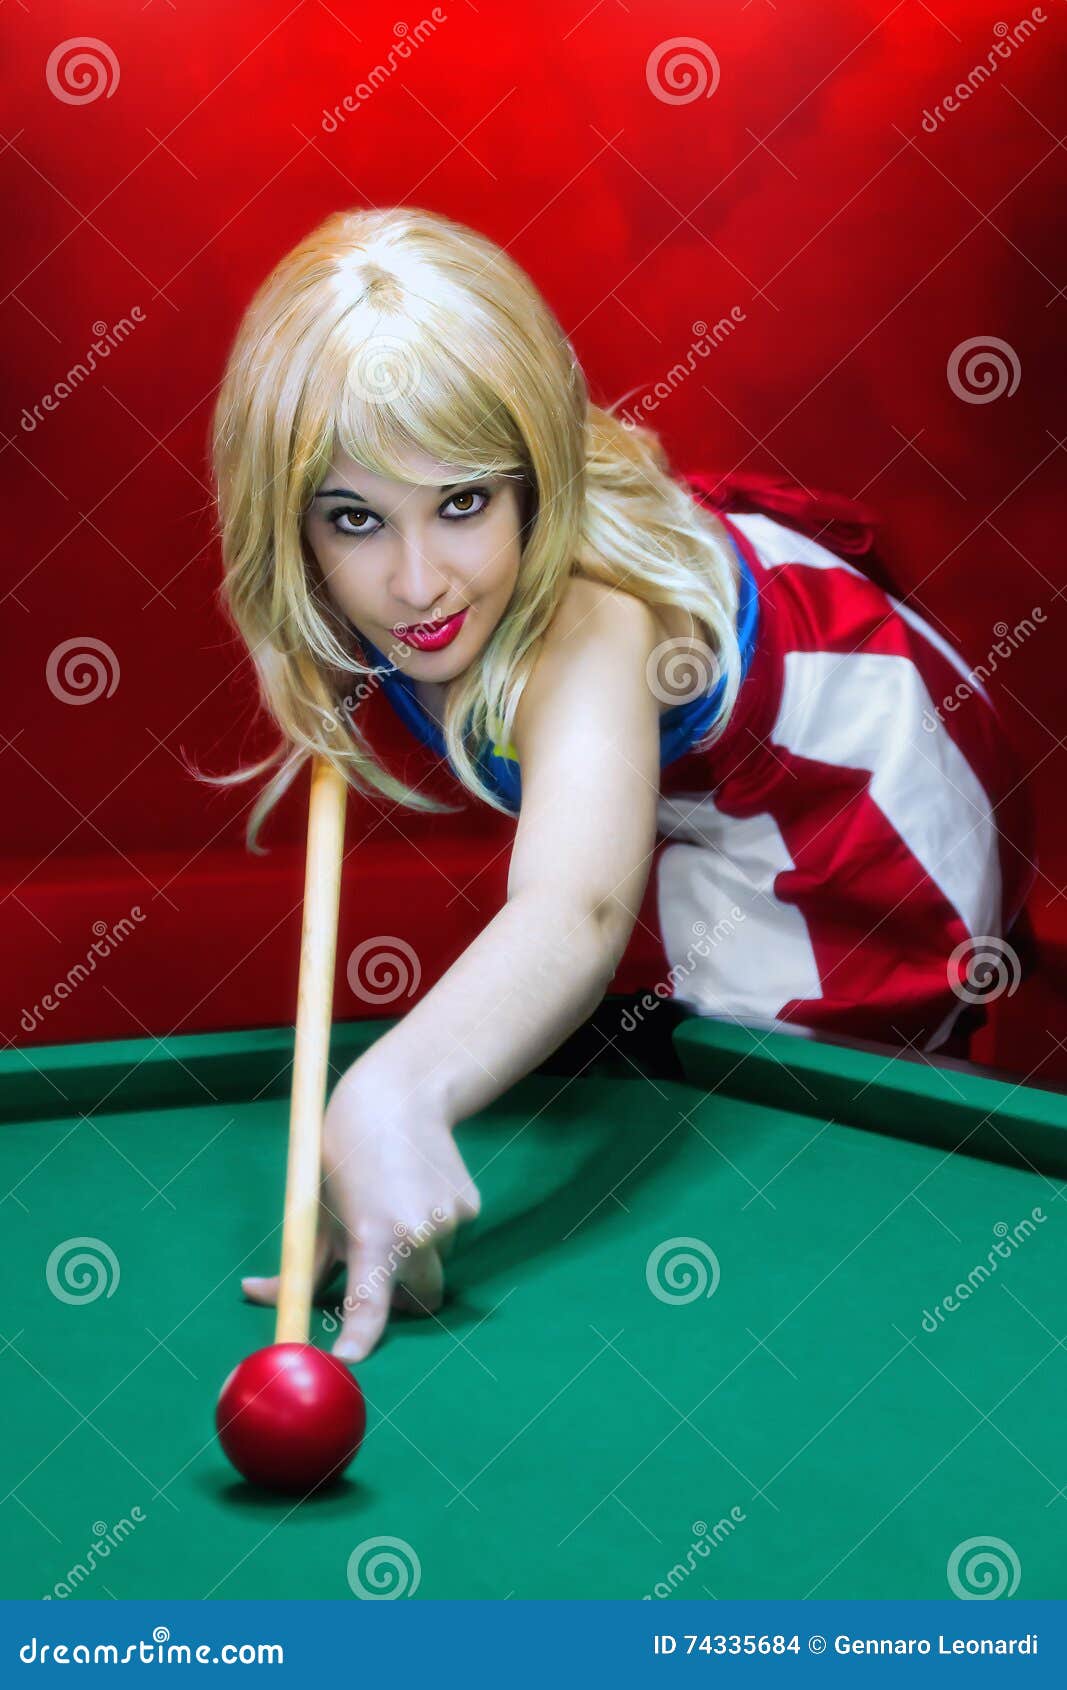 blonde bbw pool table gallerie